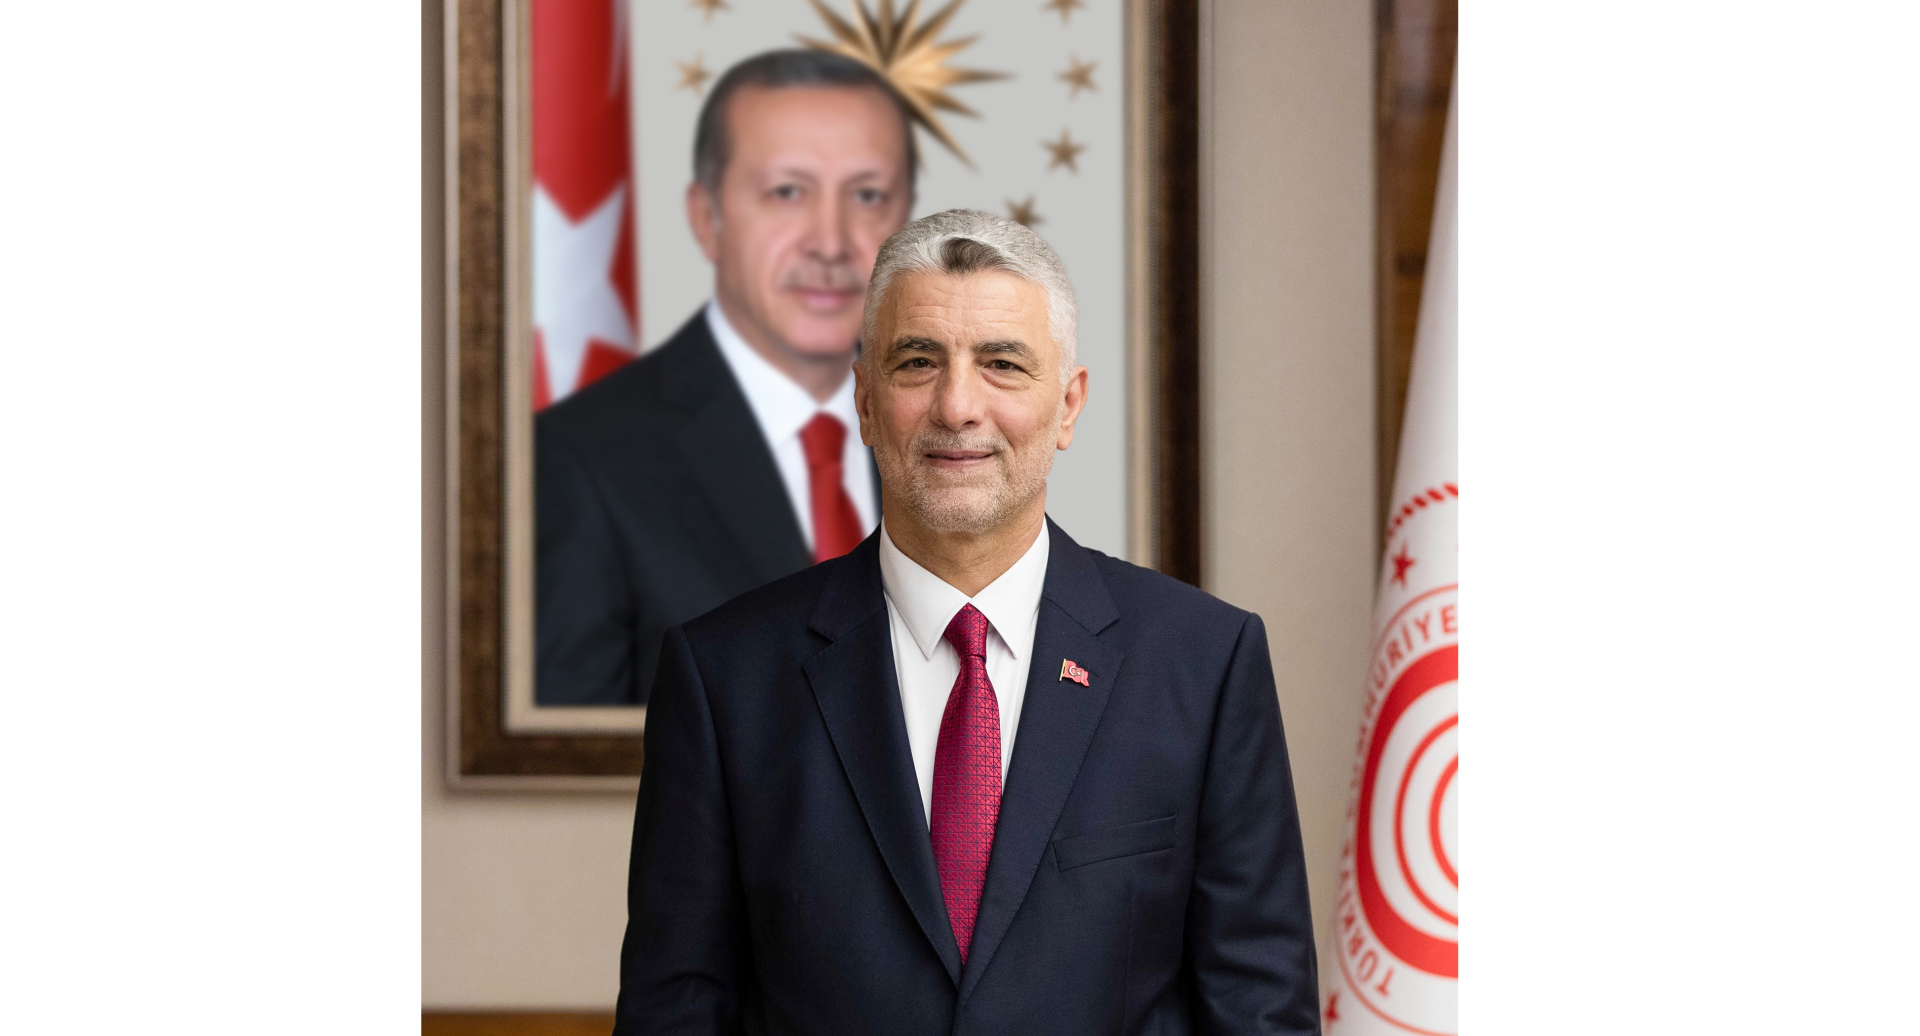 Турция строит отношения с тюркоязычными странами по принципу "win-win" - министр торговли (Эксклюзив)